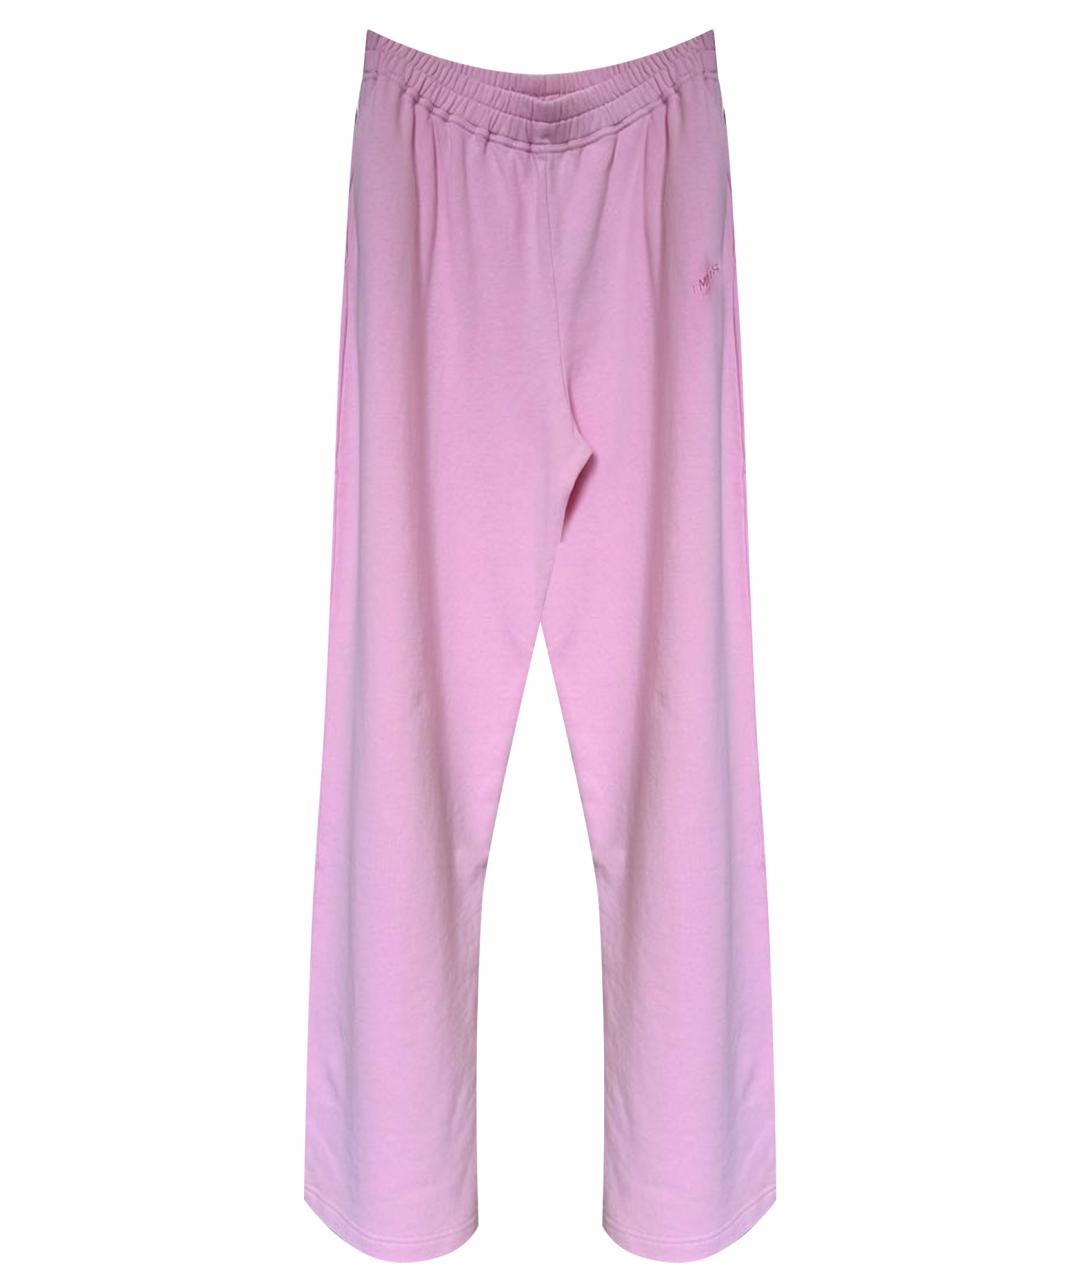 VTMNTS Розовые спортивные брюки и шорты, фото 1